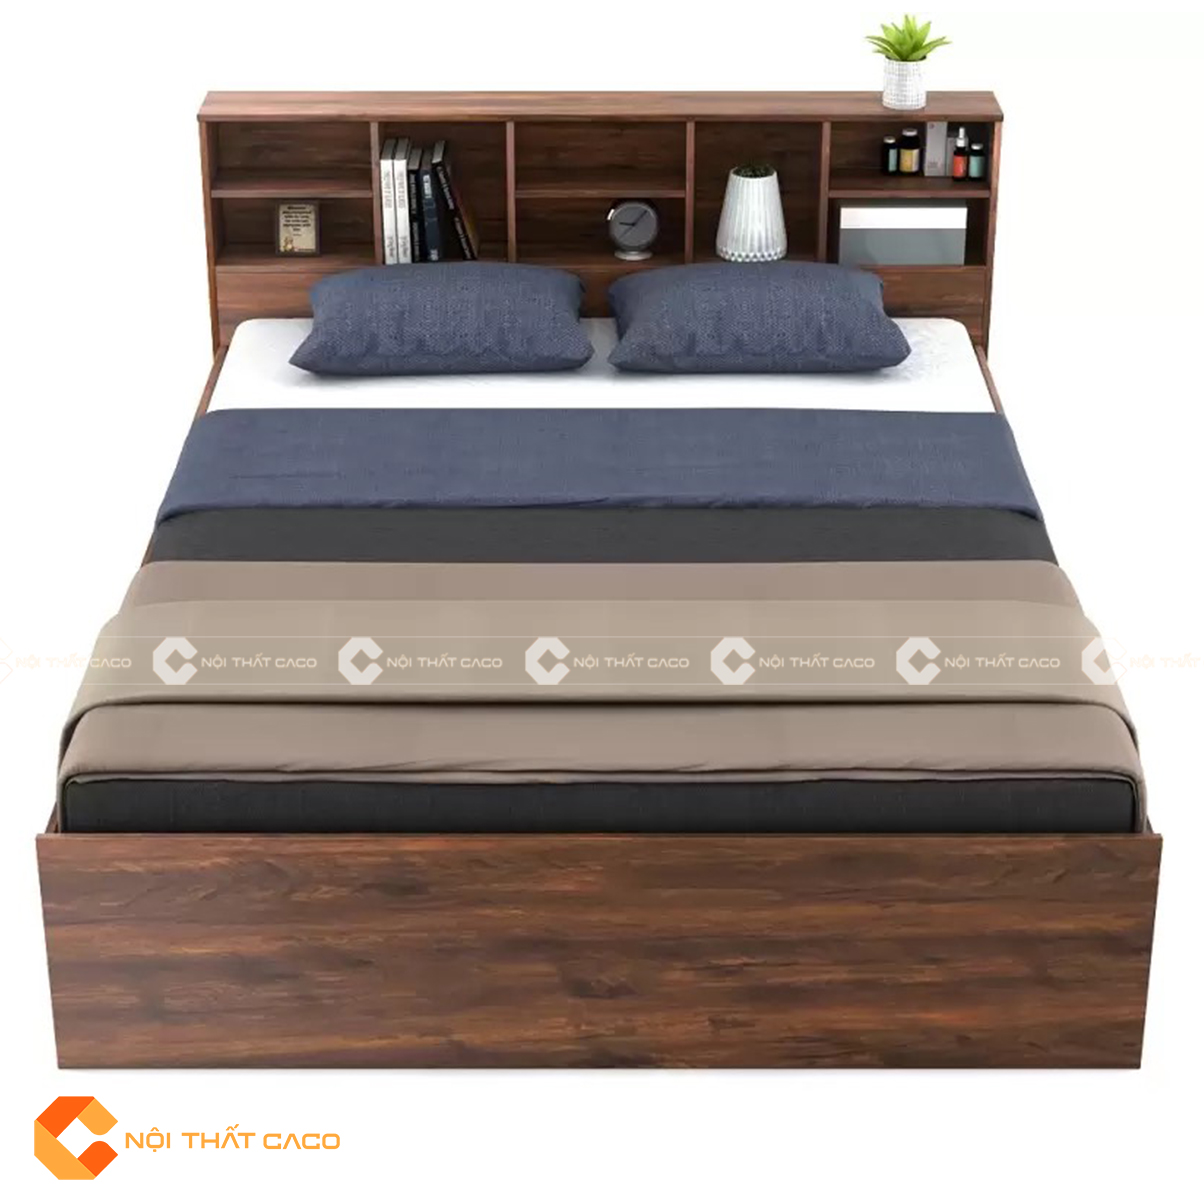 Giường ngủ gỗ công nghiệp màu nâu sang trọng